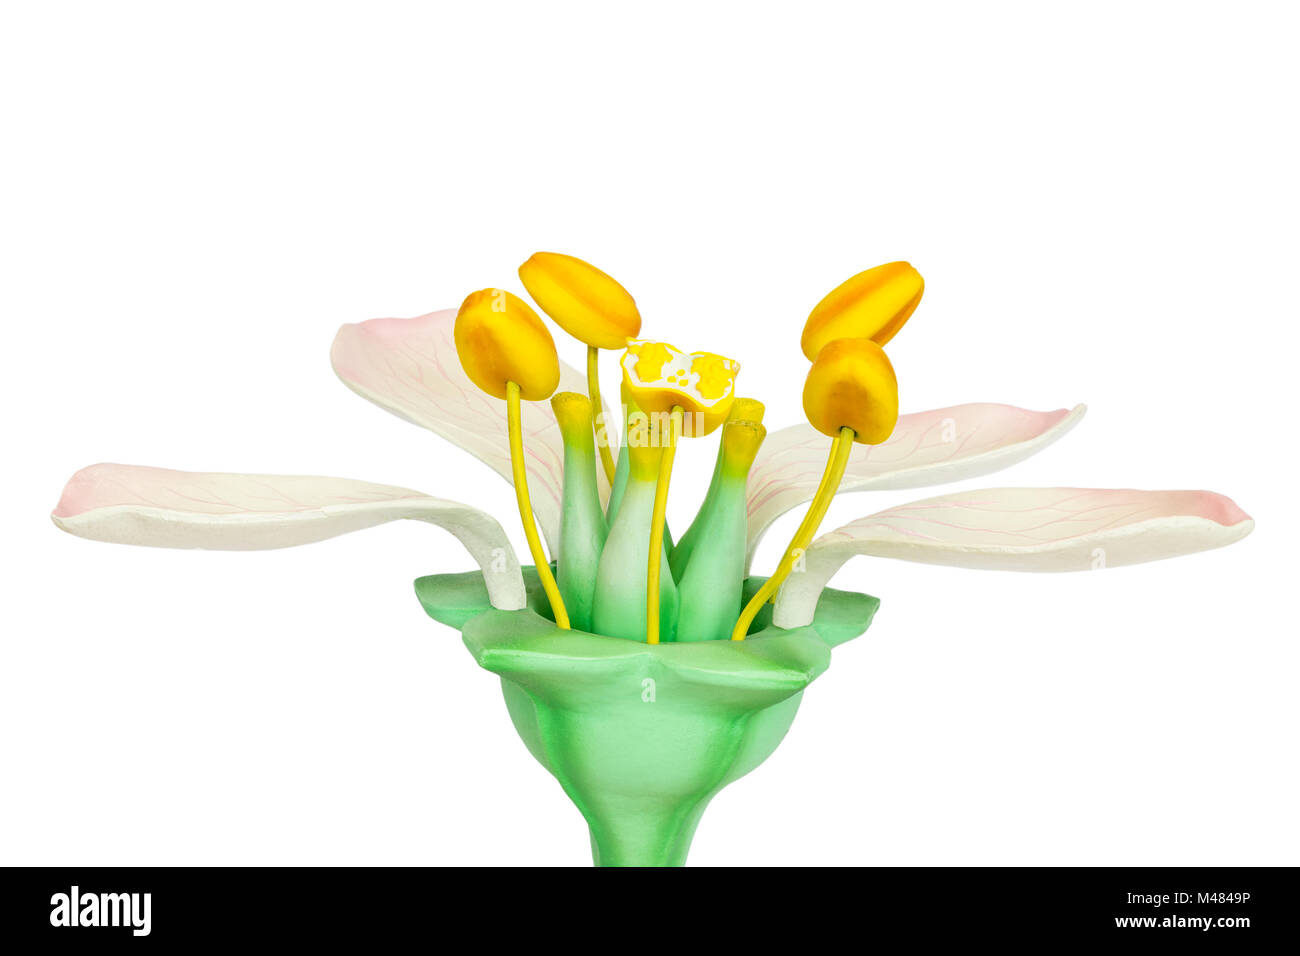 Modello di fiore con stami e pistilli su sfondo bianco Foto Stock